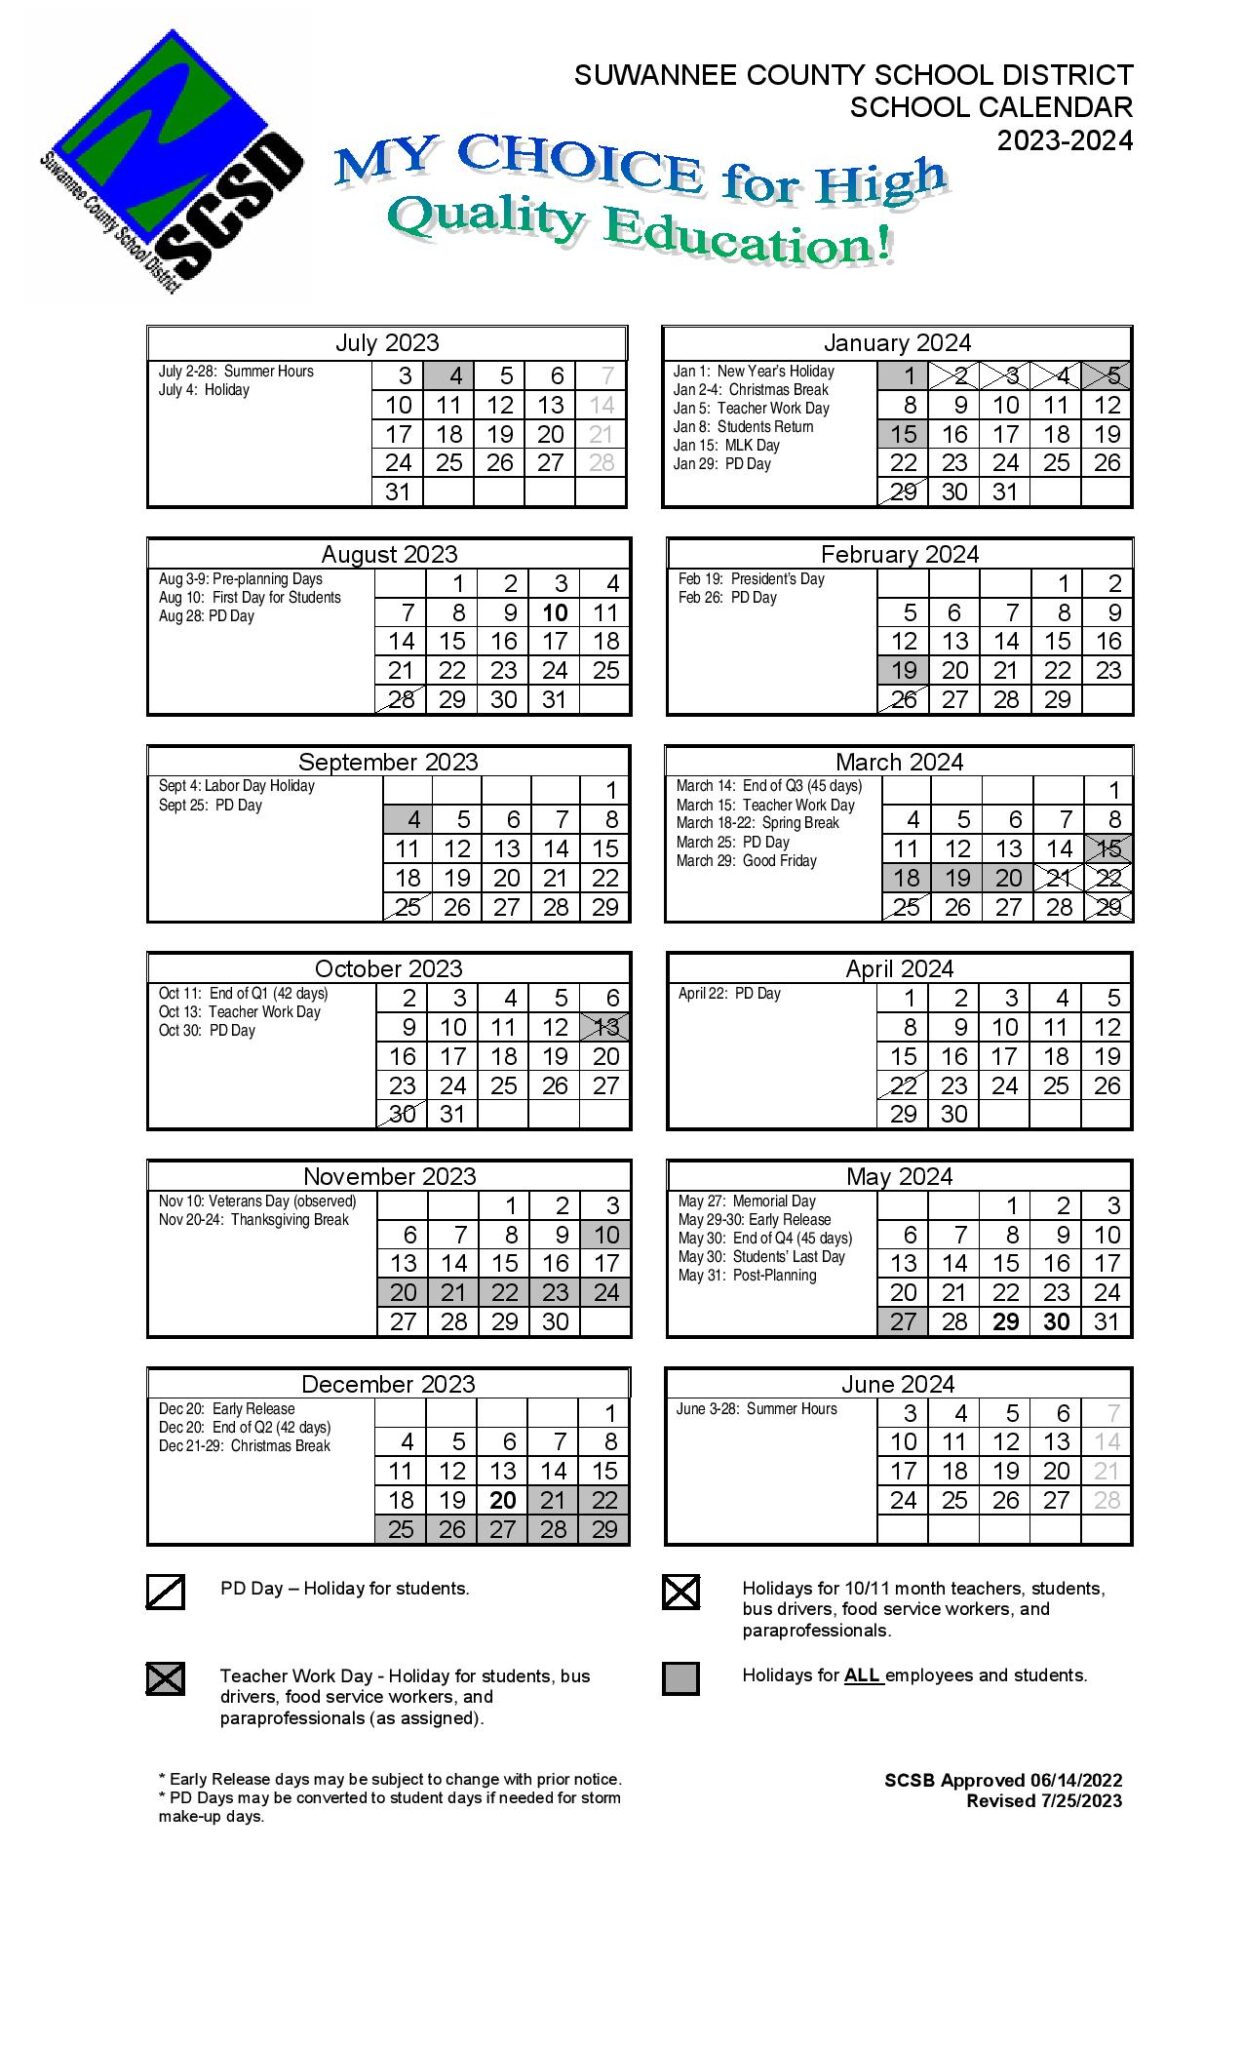 Suwannee County School District Calendar 20232024 in PDF